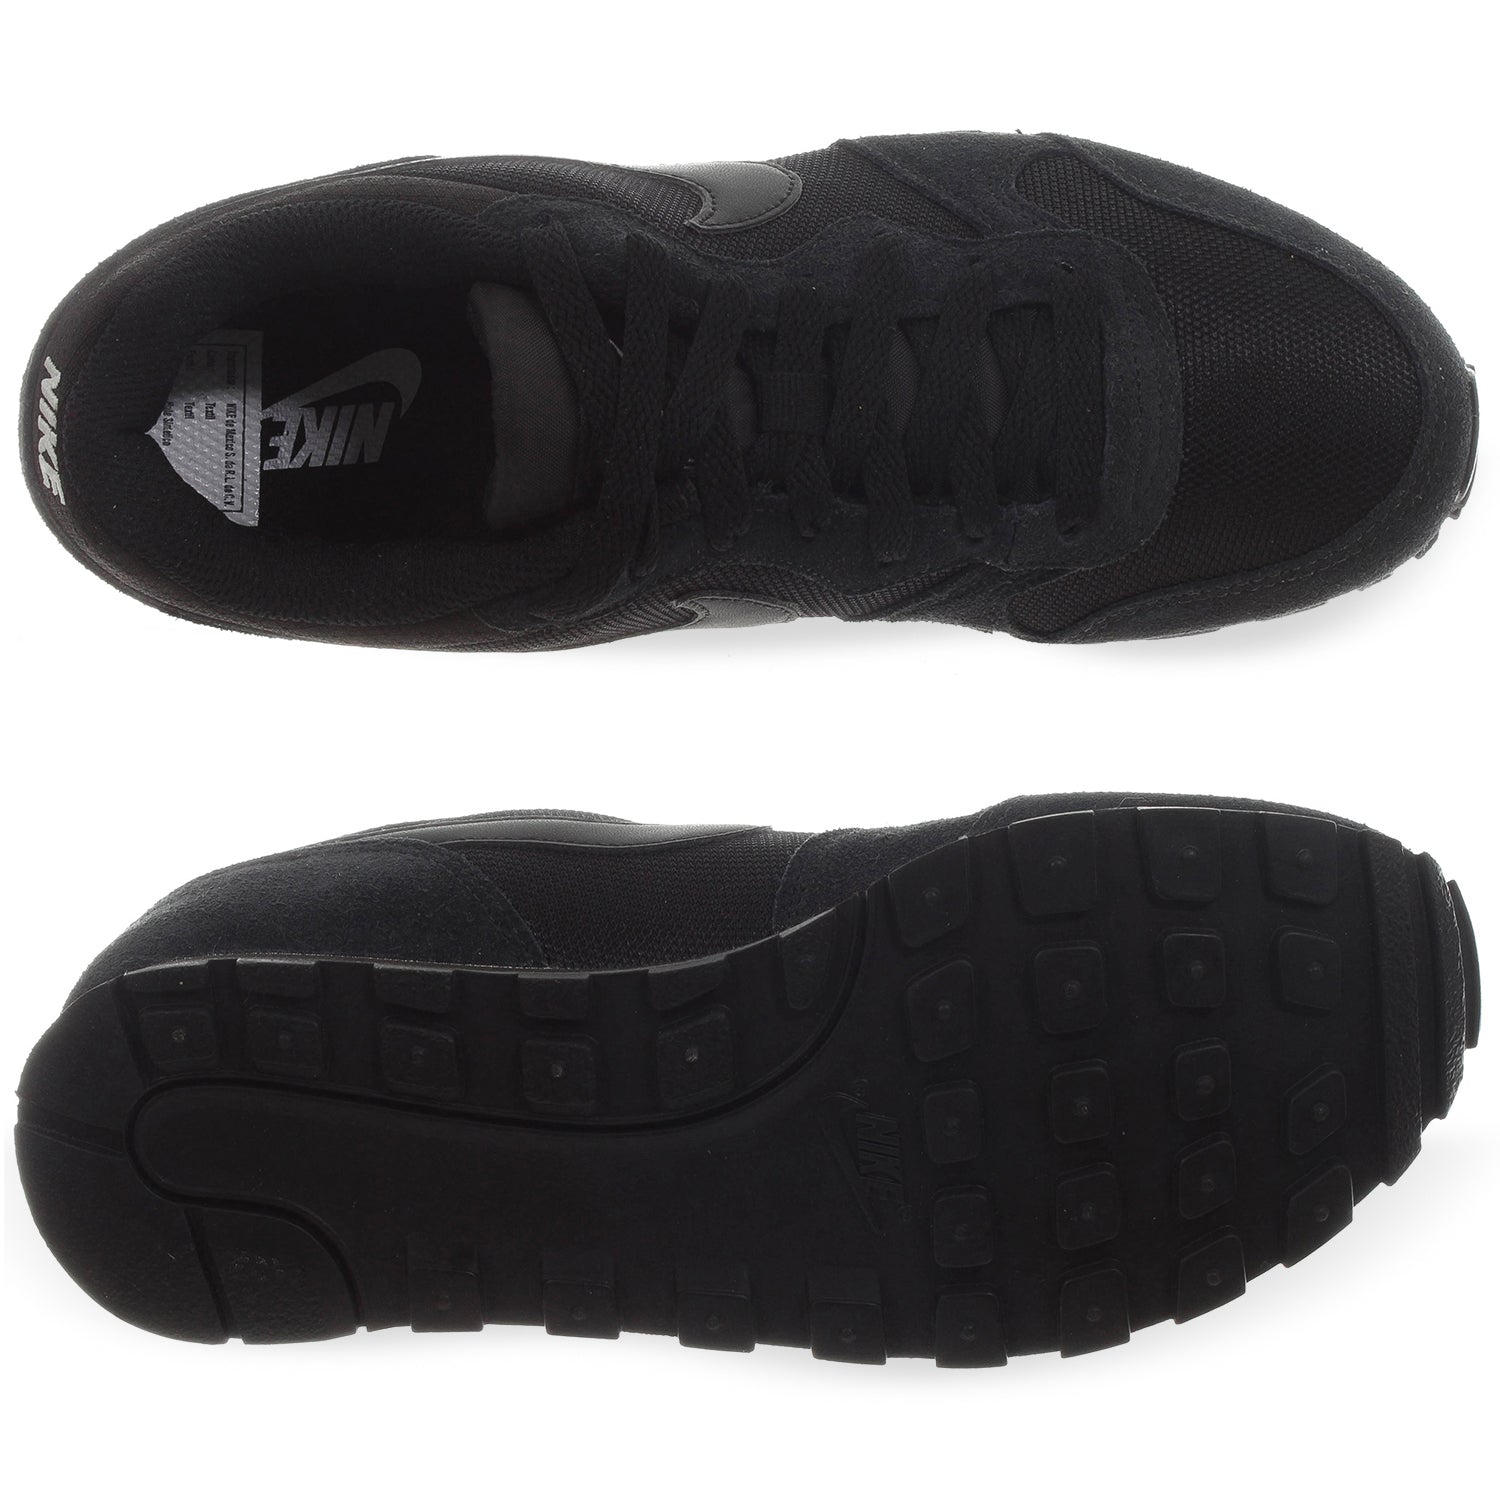 Tenis Nike MD Runner - 749869001 - Negro | Shoelander.com - Footwear